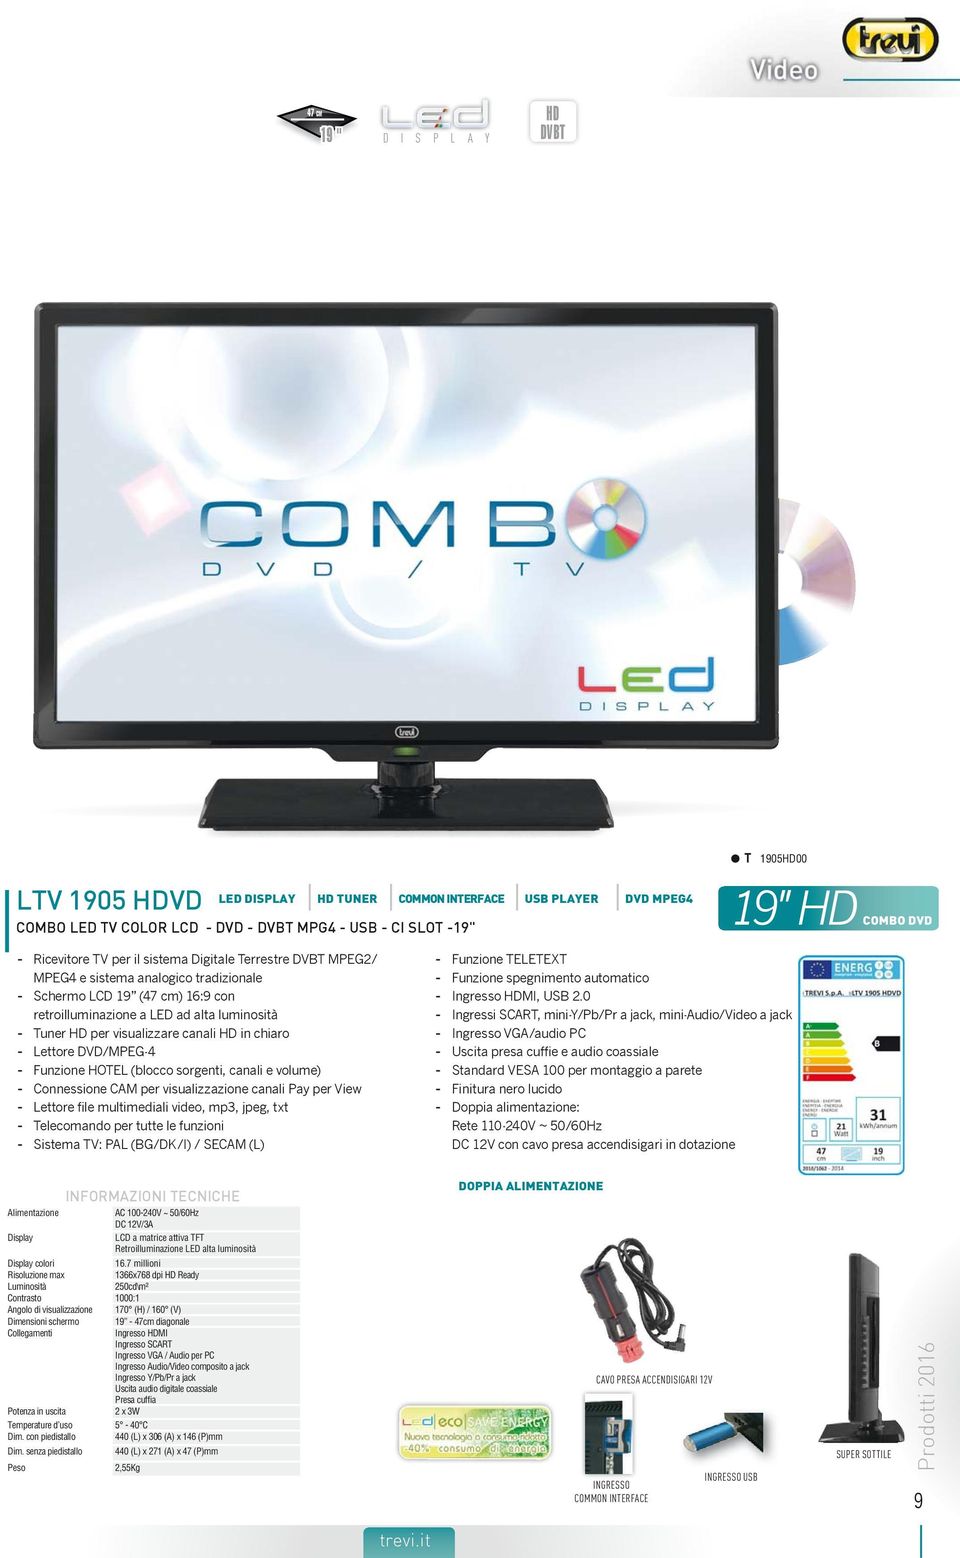 chiaro - Lettore DVD/MPEG-4 - Funzione HOTEL (blocco sorgenti, canali e volume) - Connessione CAM per visualizzazione canali Pay per View - Lettore file multimediali video, mp3, jpeg, txt - Sistema